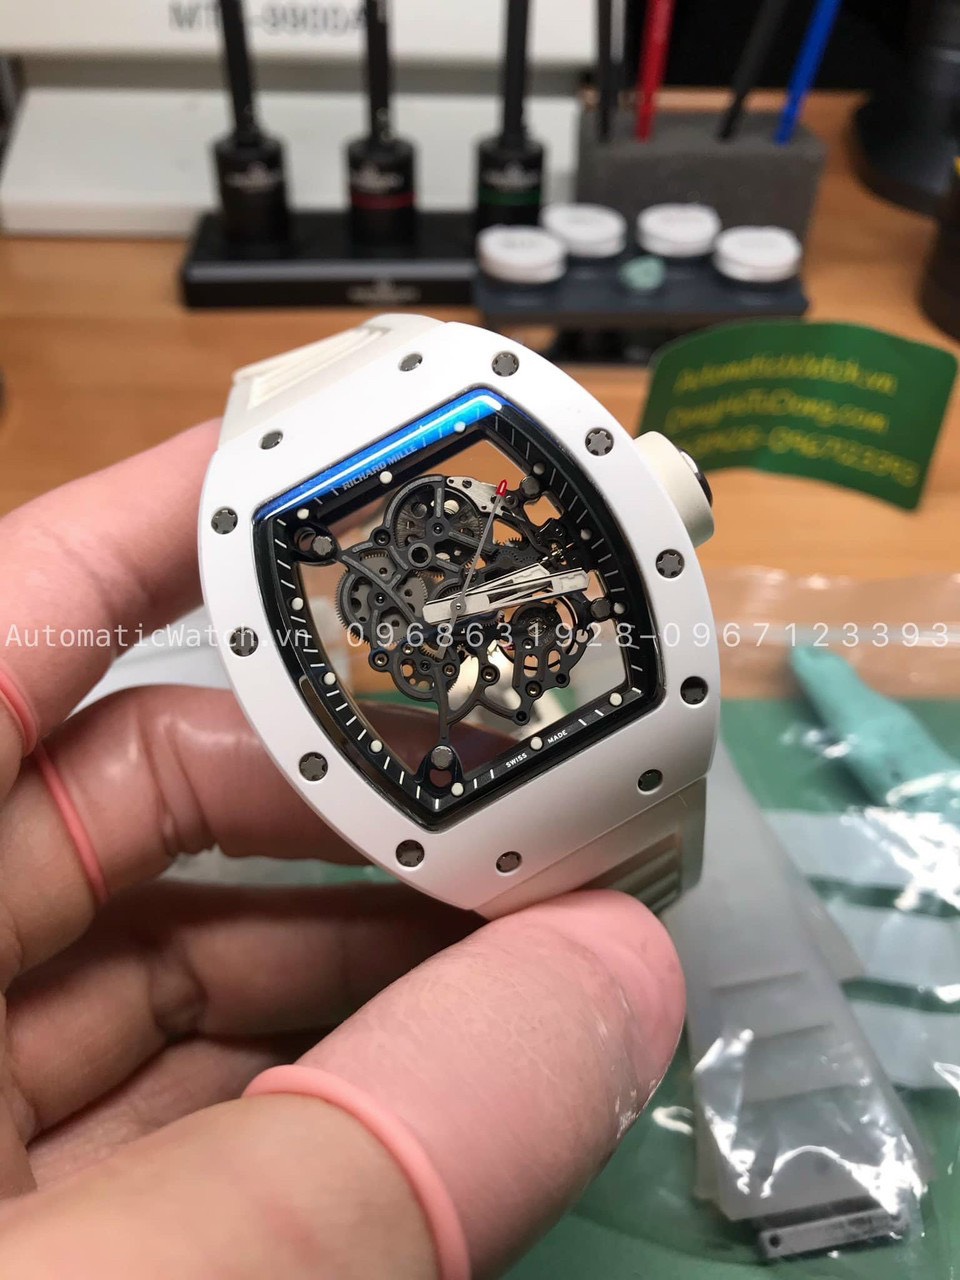 Canh Chỉnh sai số đồng hồ Richard Mille RM055 chính hãng